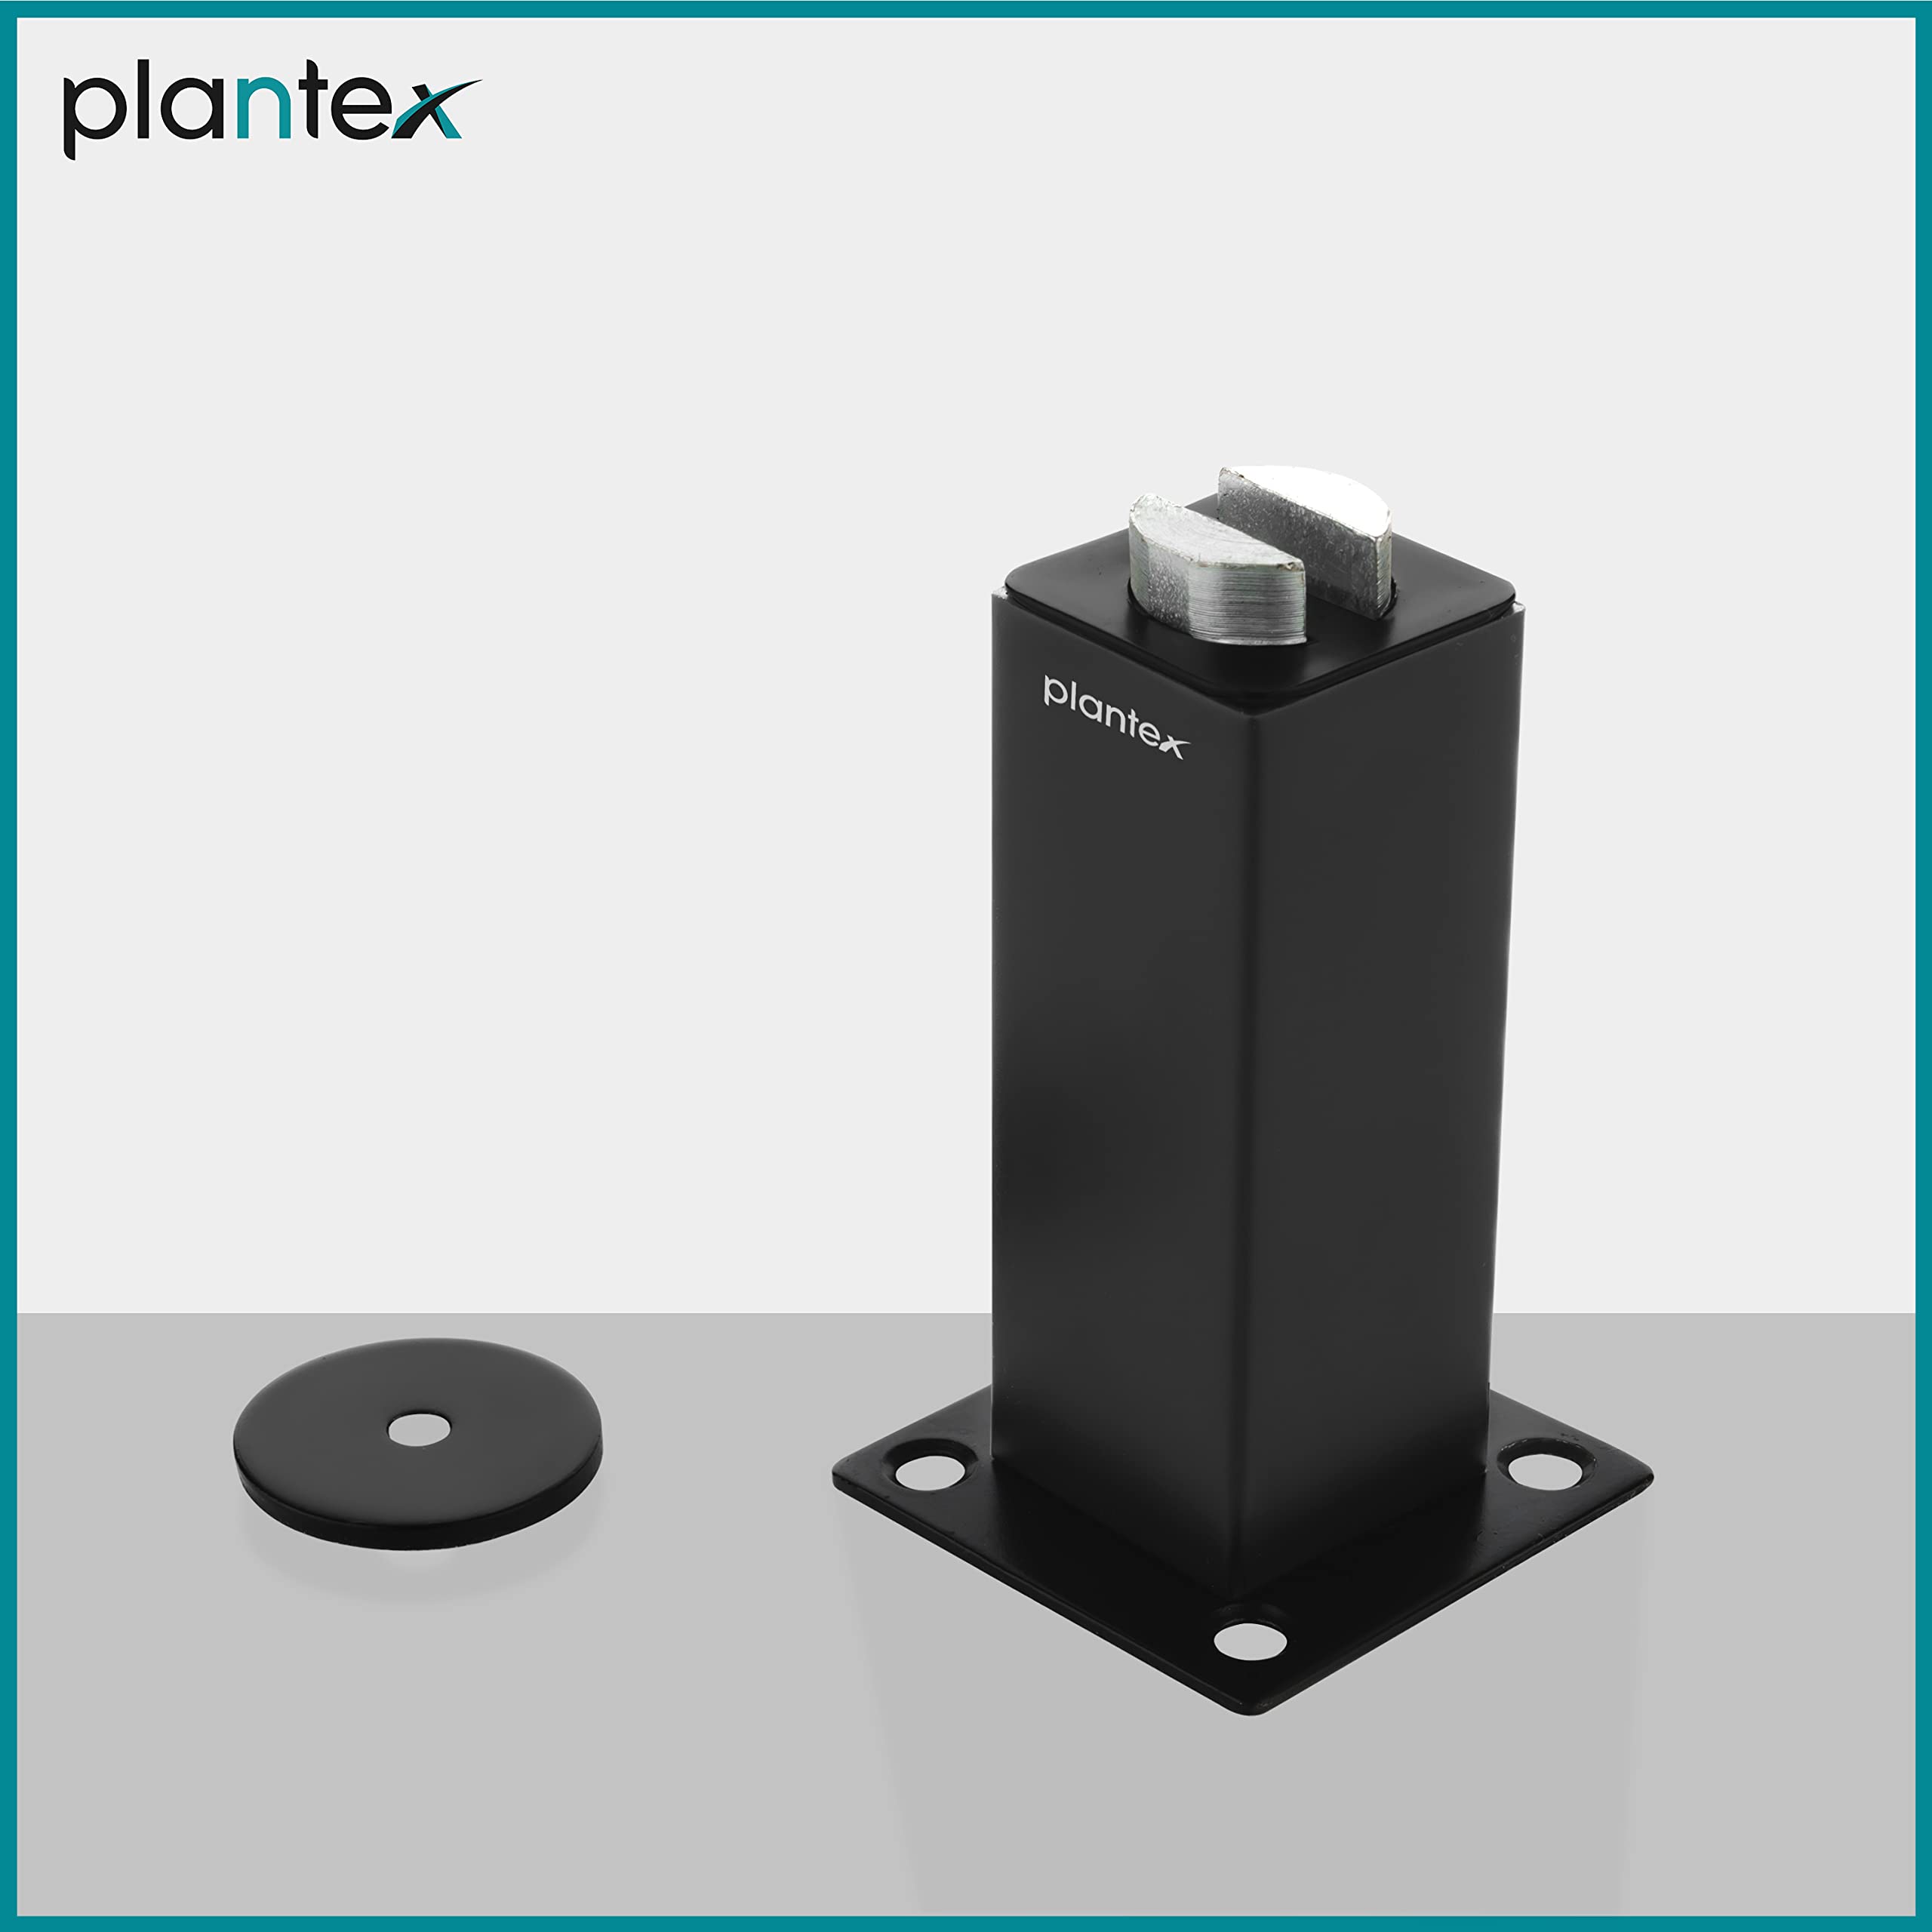 Plantex Stainless Steel 3 inch Square Door Magnet/Door Stopper/Door Catcher for Home/Office/Hotel - Pack of 1 (APS-1118-Black)